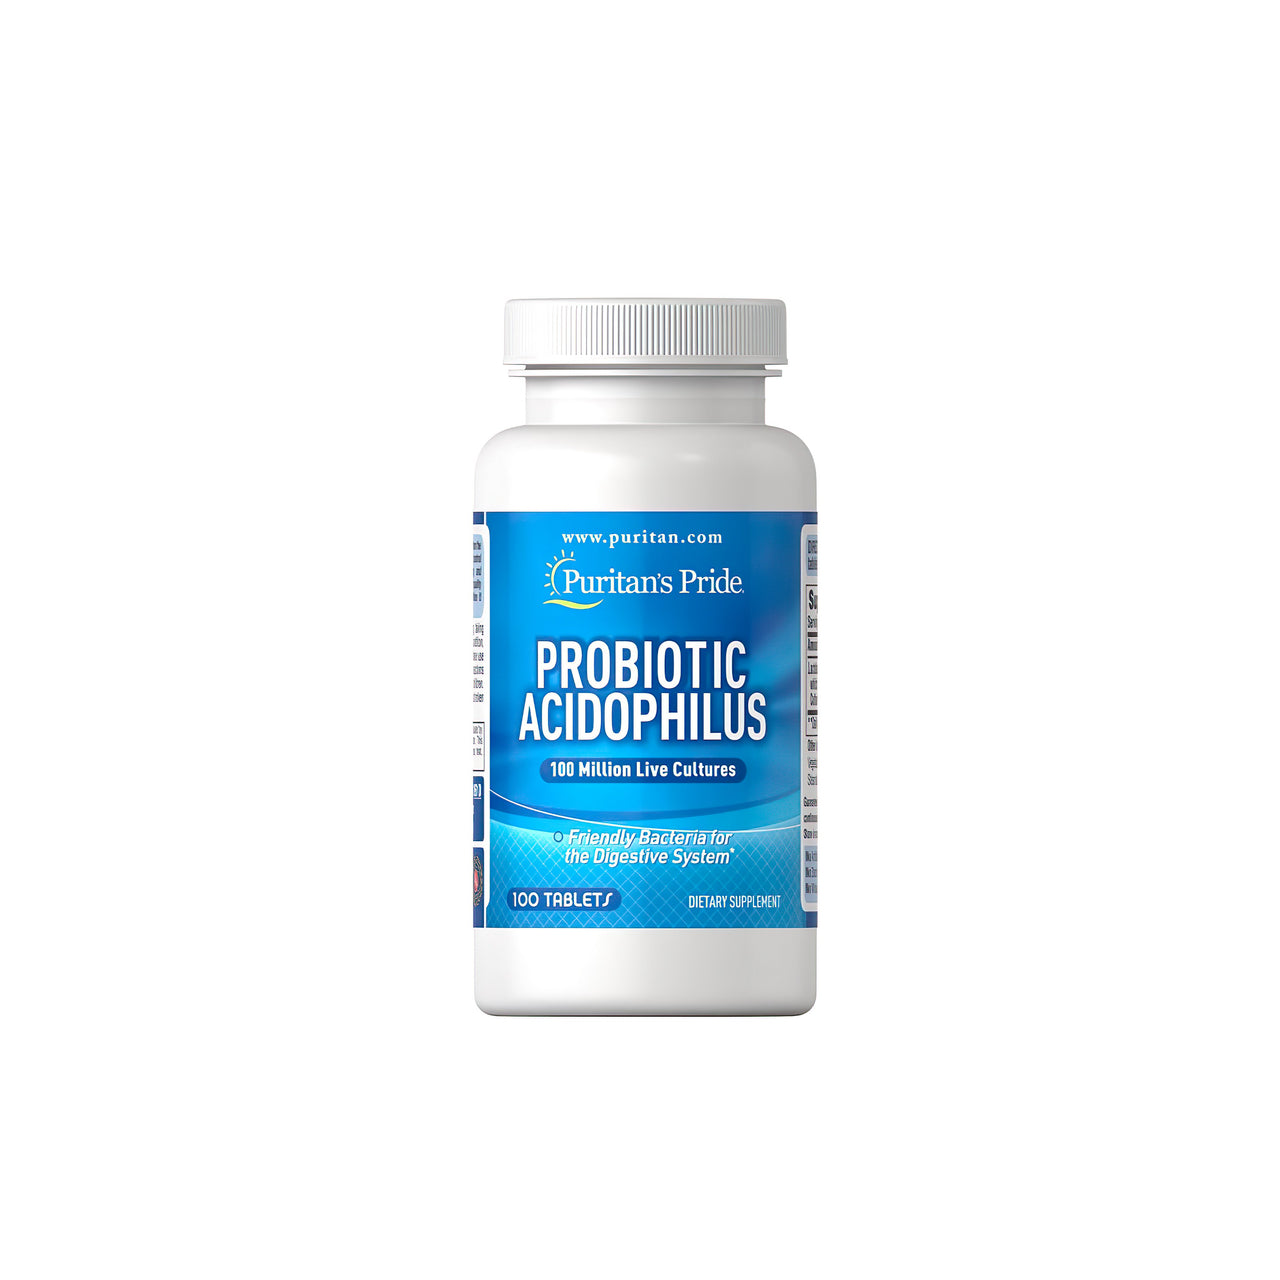 Un flacon de Probiotic Acidophilus 100 comprimés de Puritan's Pride, contenant des probiotiques pour le système digestif et immunitaire.